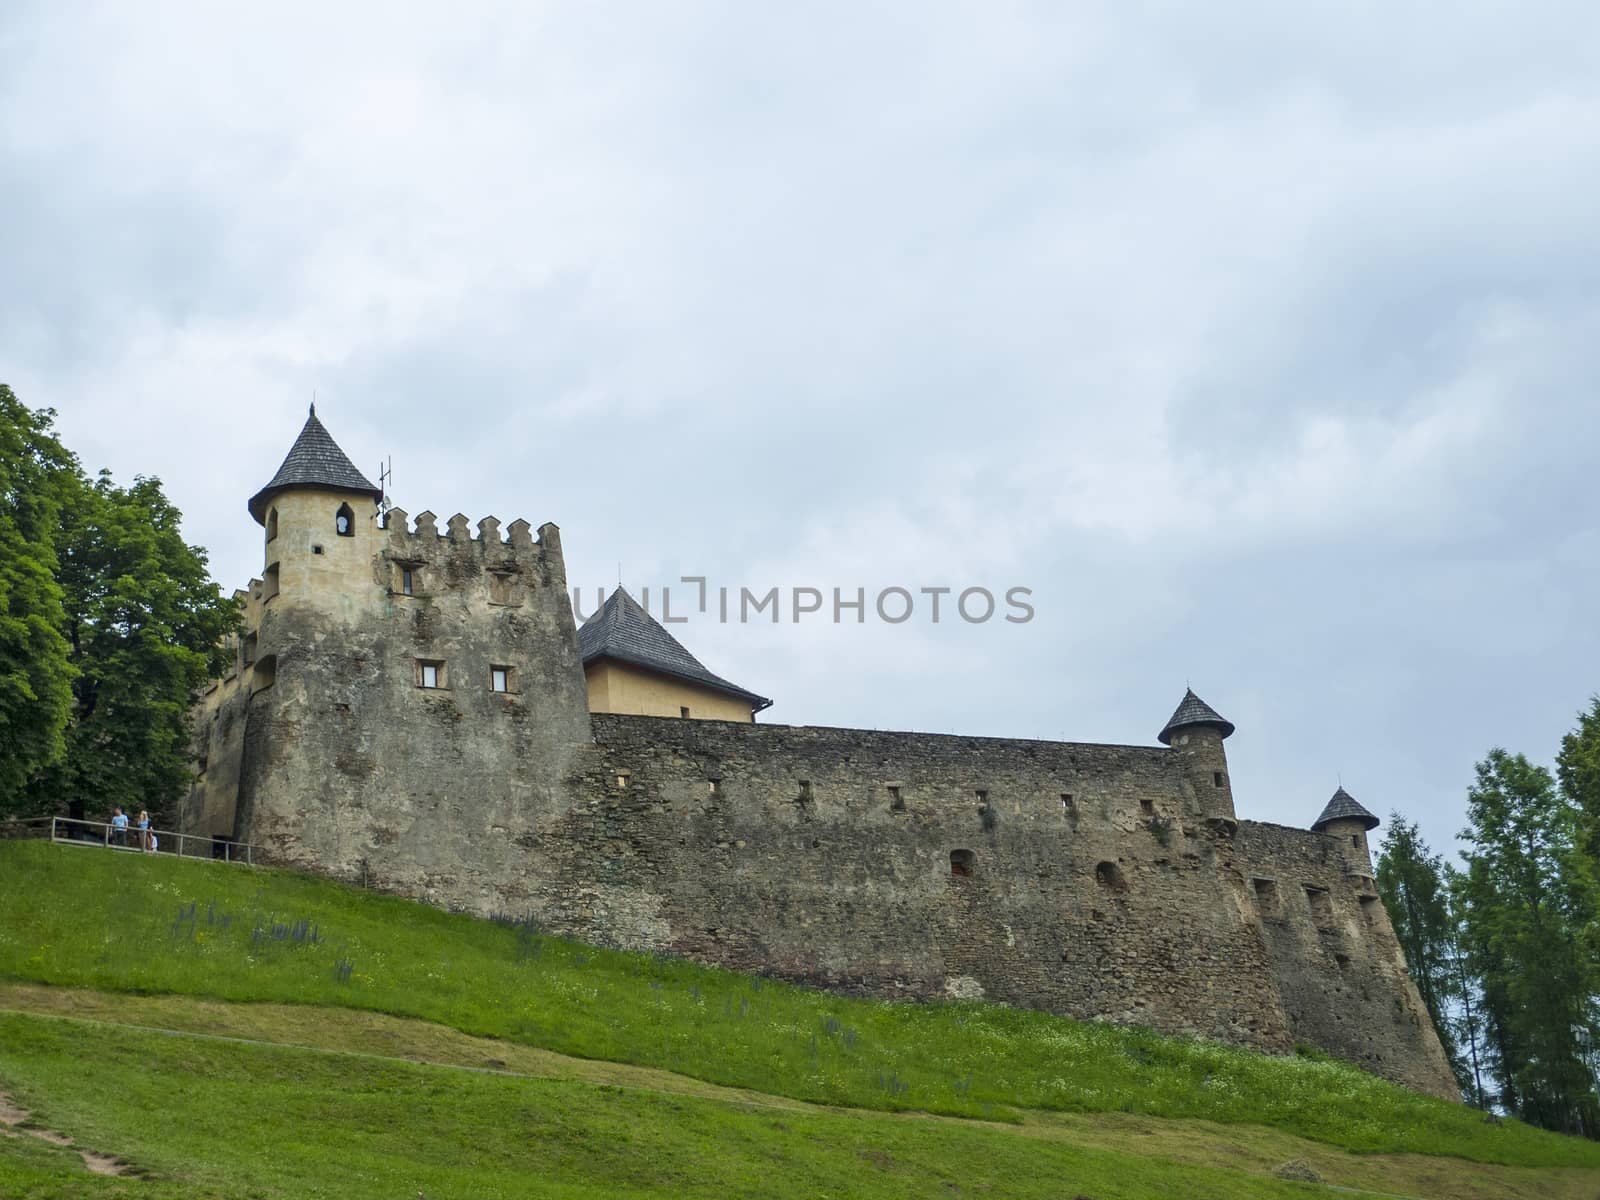 Castle Stara Lubovna in Slovakia